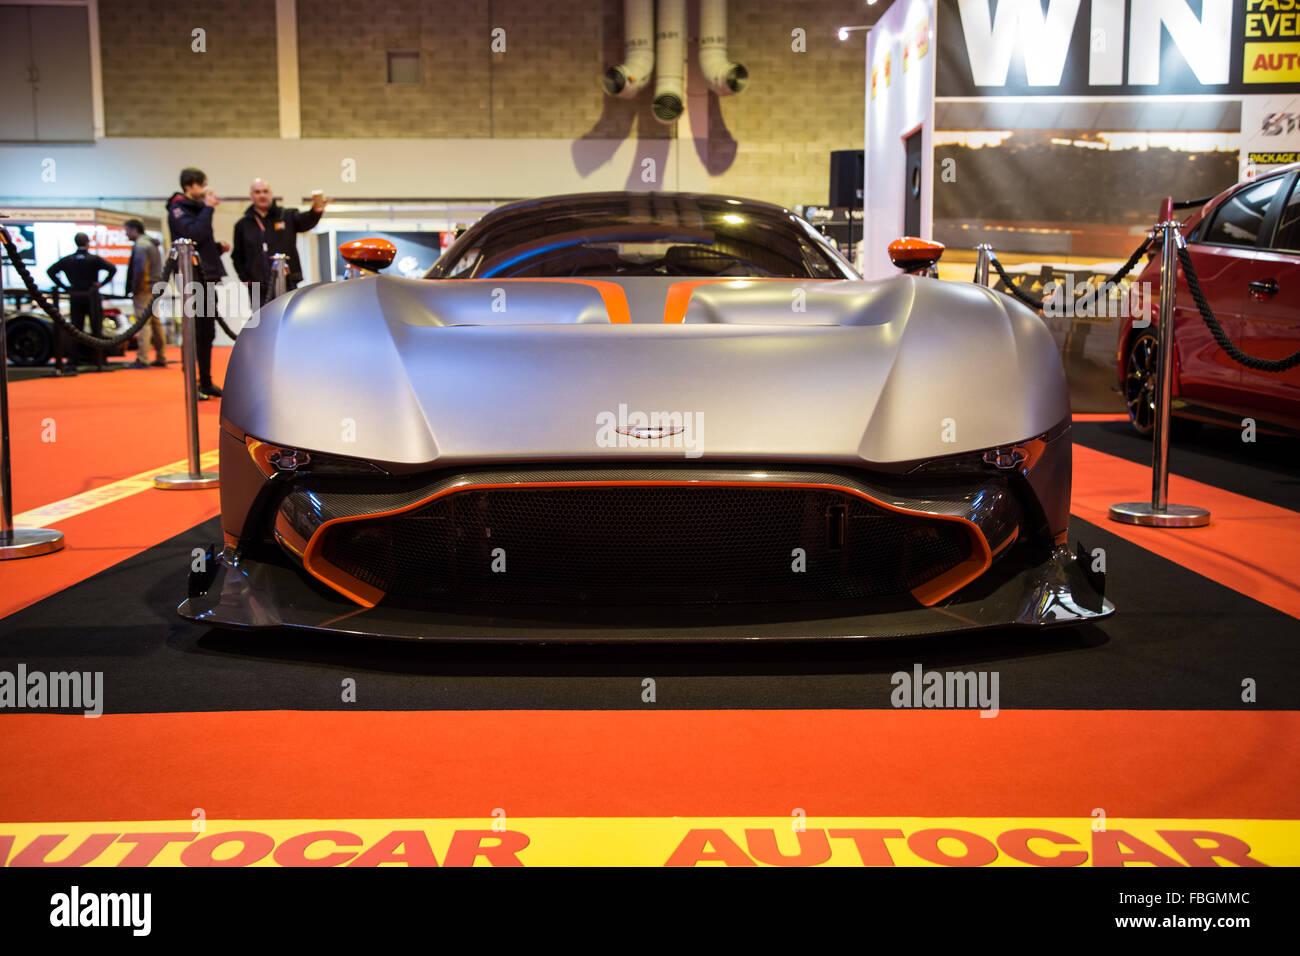 Birmingham, Regno Unito. 16 gennaio, 2016. Aston Martin Vulcan sul Autocar credito stand: Steven roe/Alamy Live News Foto Stock